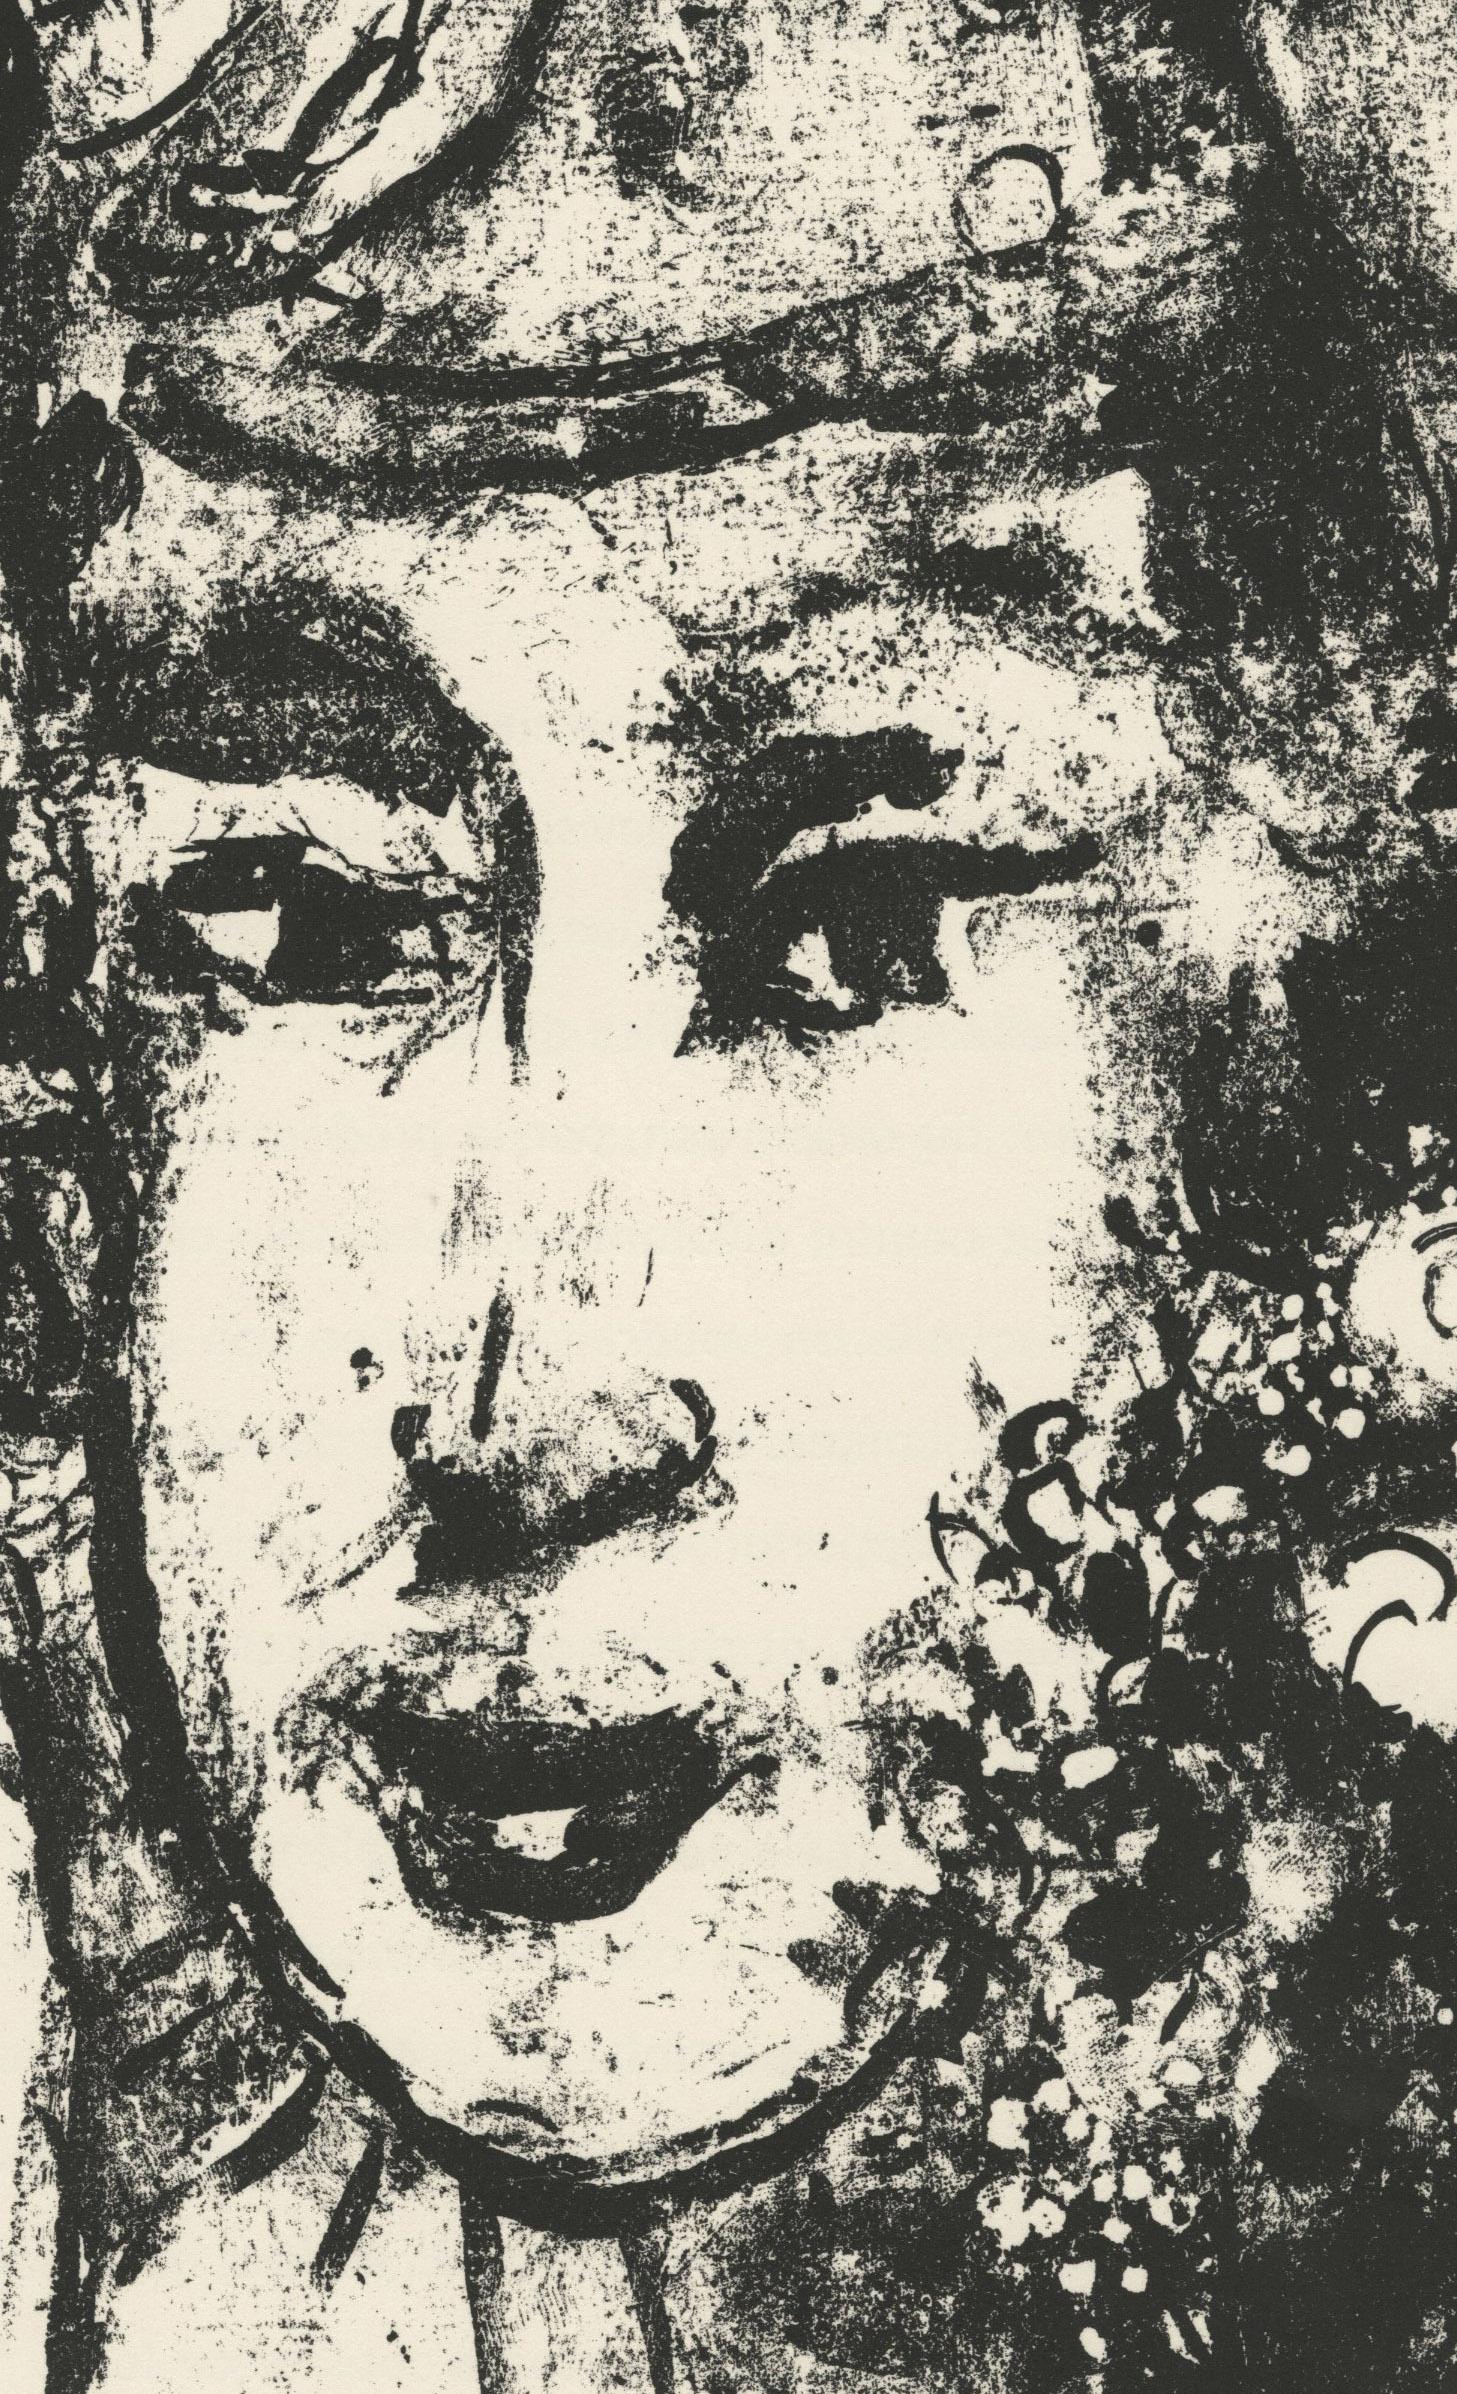 Le Clown Blanc (The White Clown)
Lithographie, 1964
Non signé (tel que délivré par DLM)
De : Derriere le Miroir Chagall : Dessins et Lavis, Exposition Chagall, Galeries Maeght, No. 146, 1964
Edition : Inconnue (grande)
Imprimé par Mourlot,